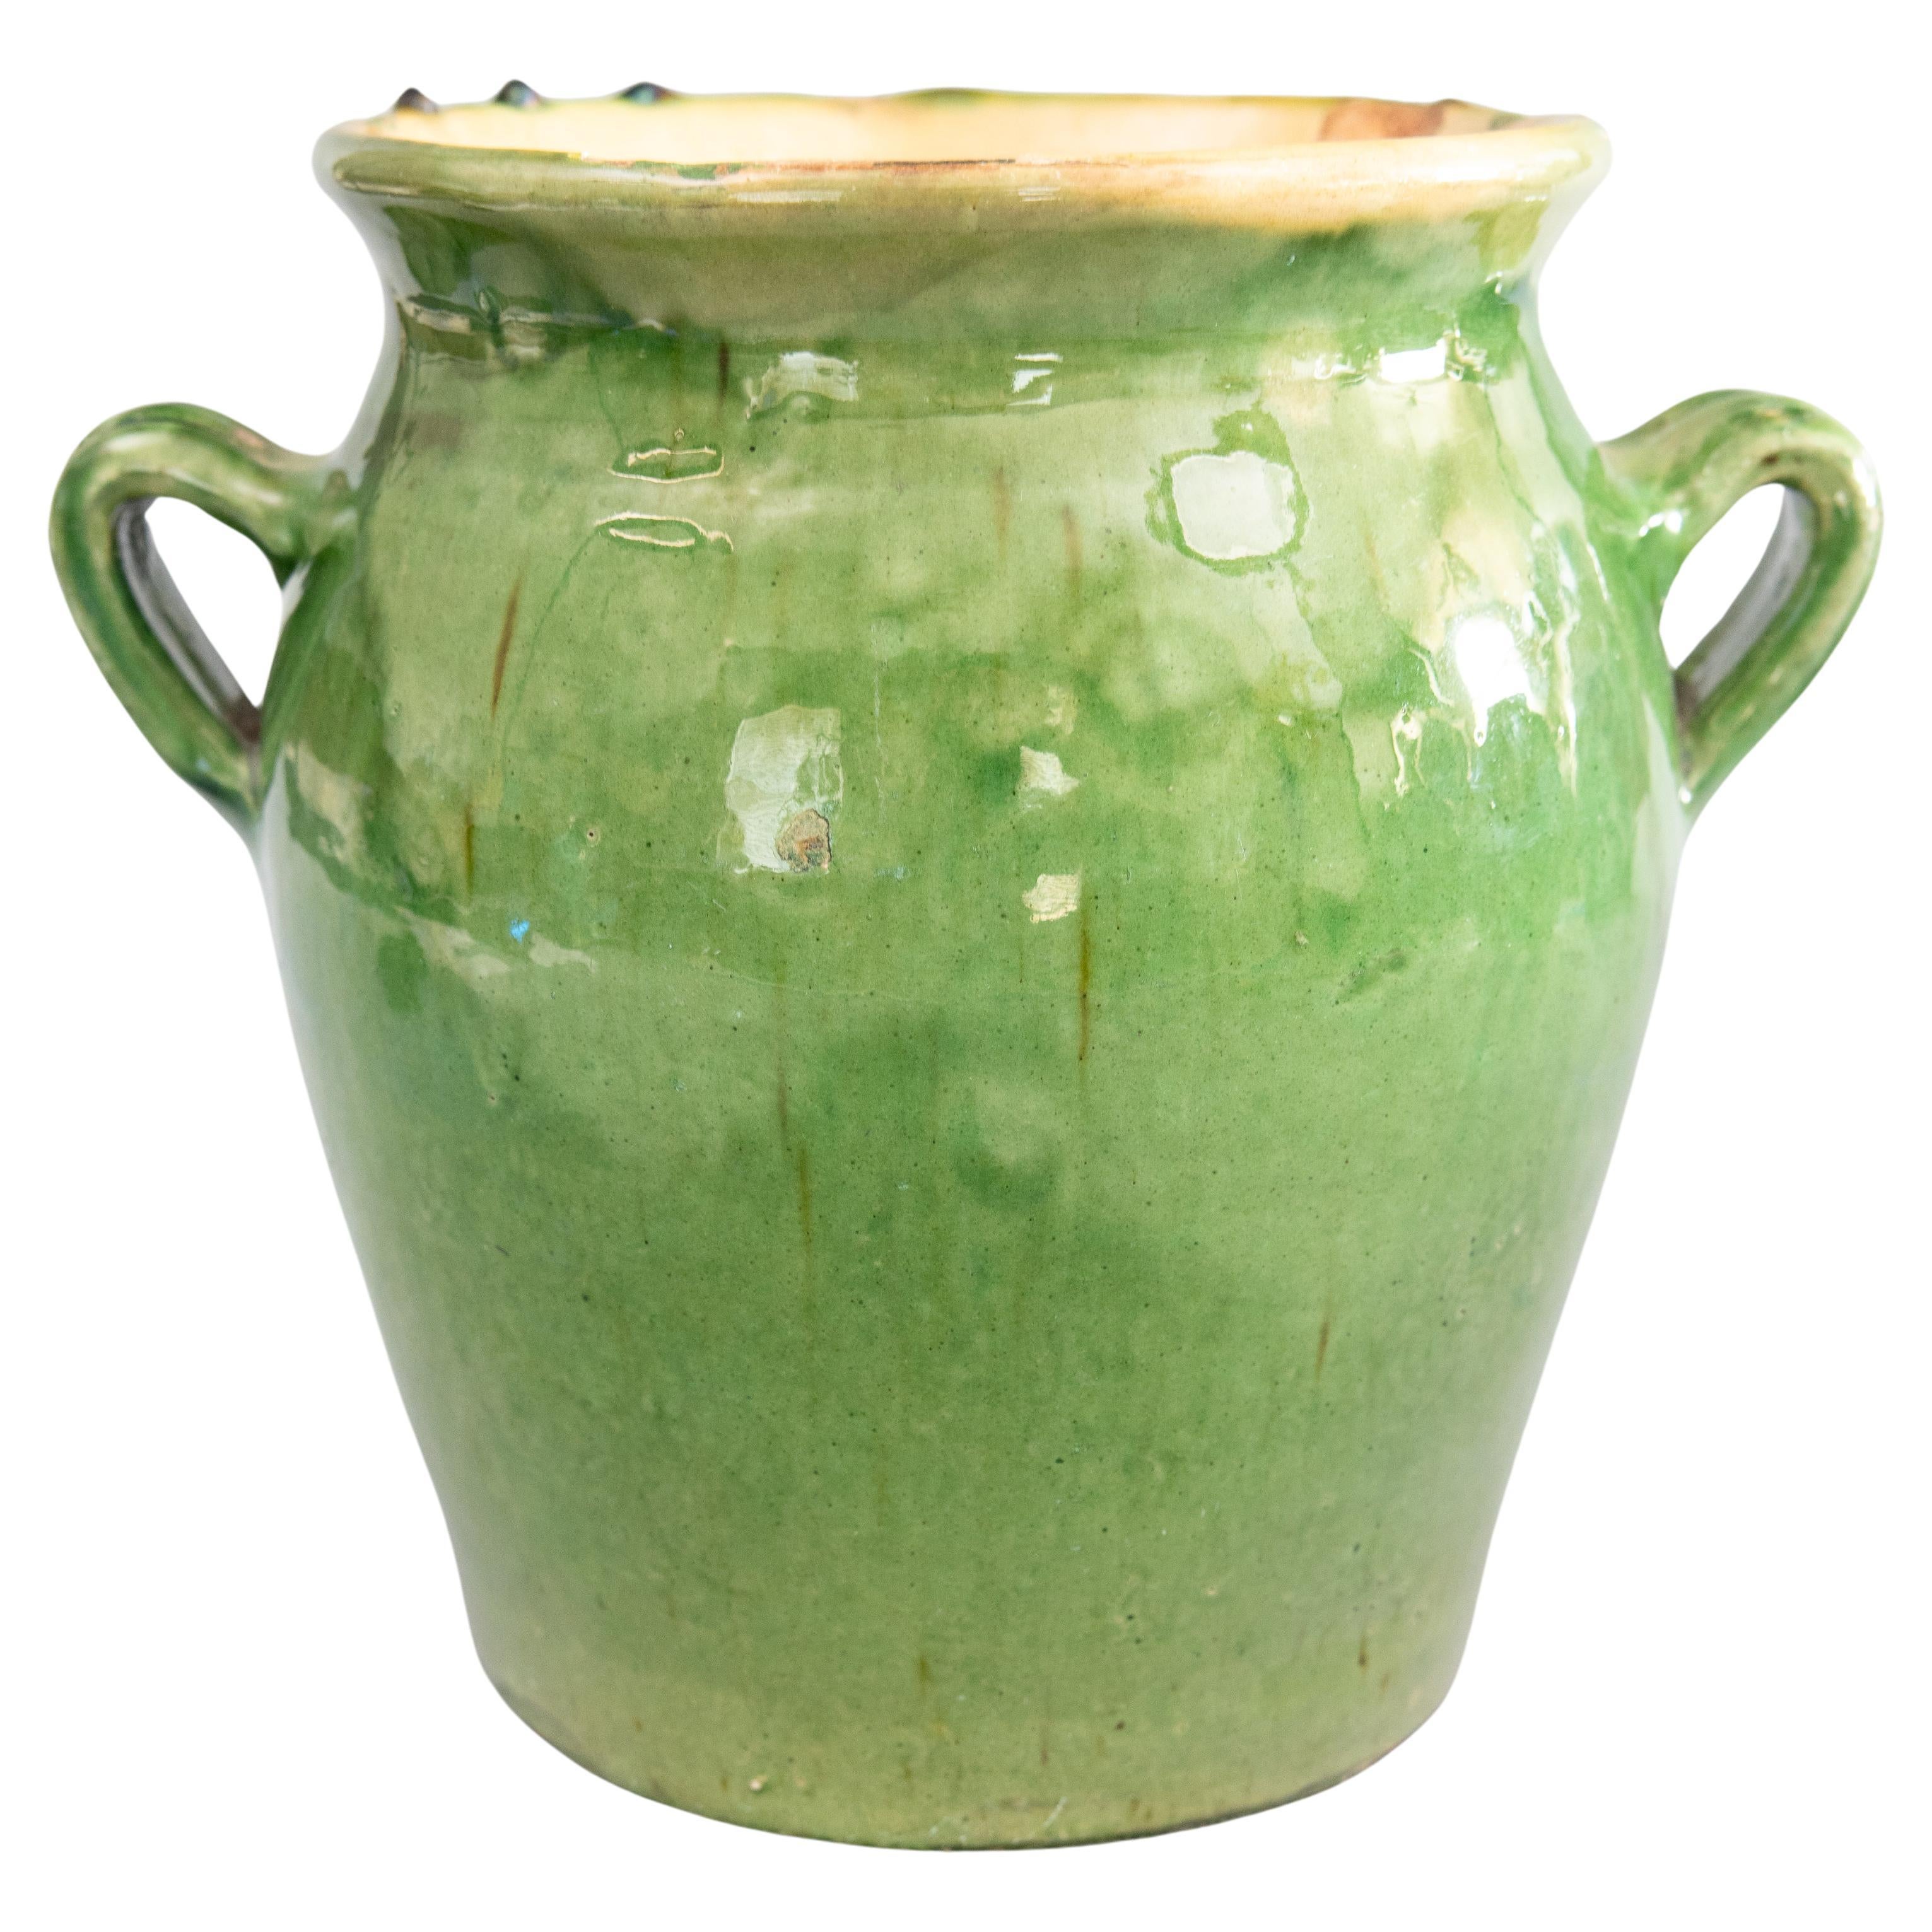 Vase jardinière française du 19ème siècle en terre cuite émaillée verte Crock Confit Pot